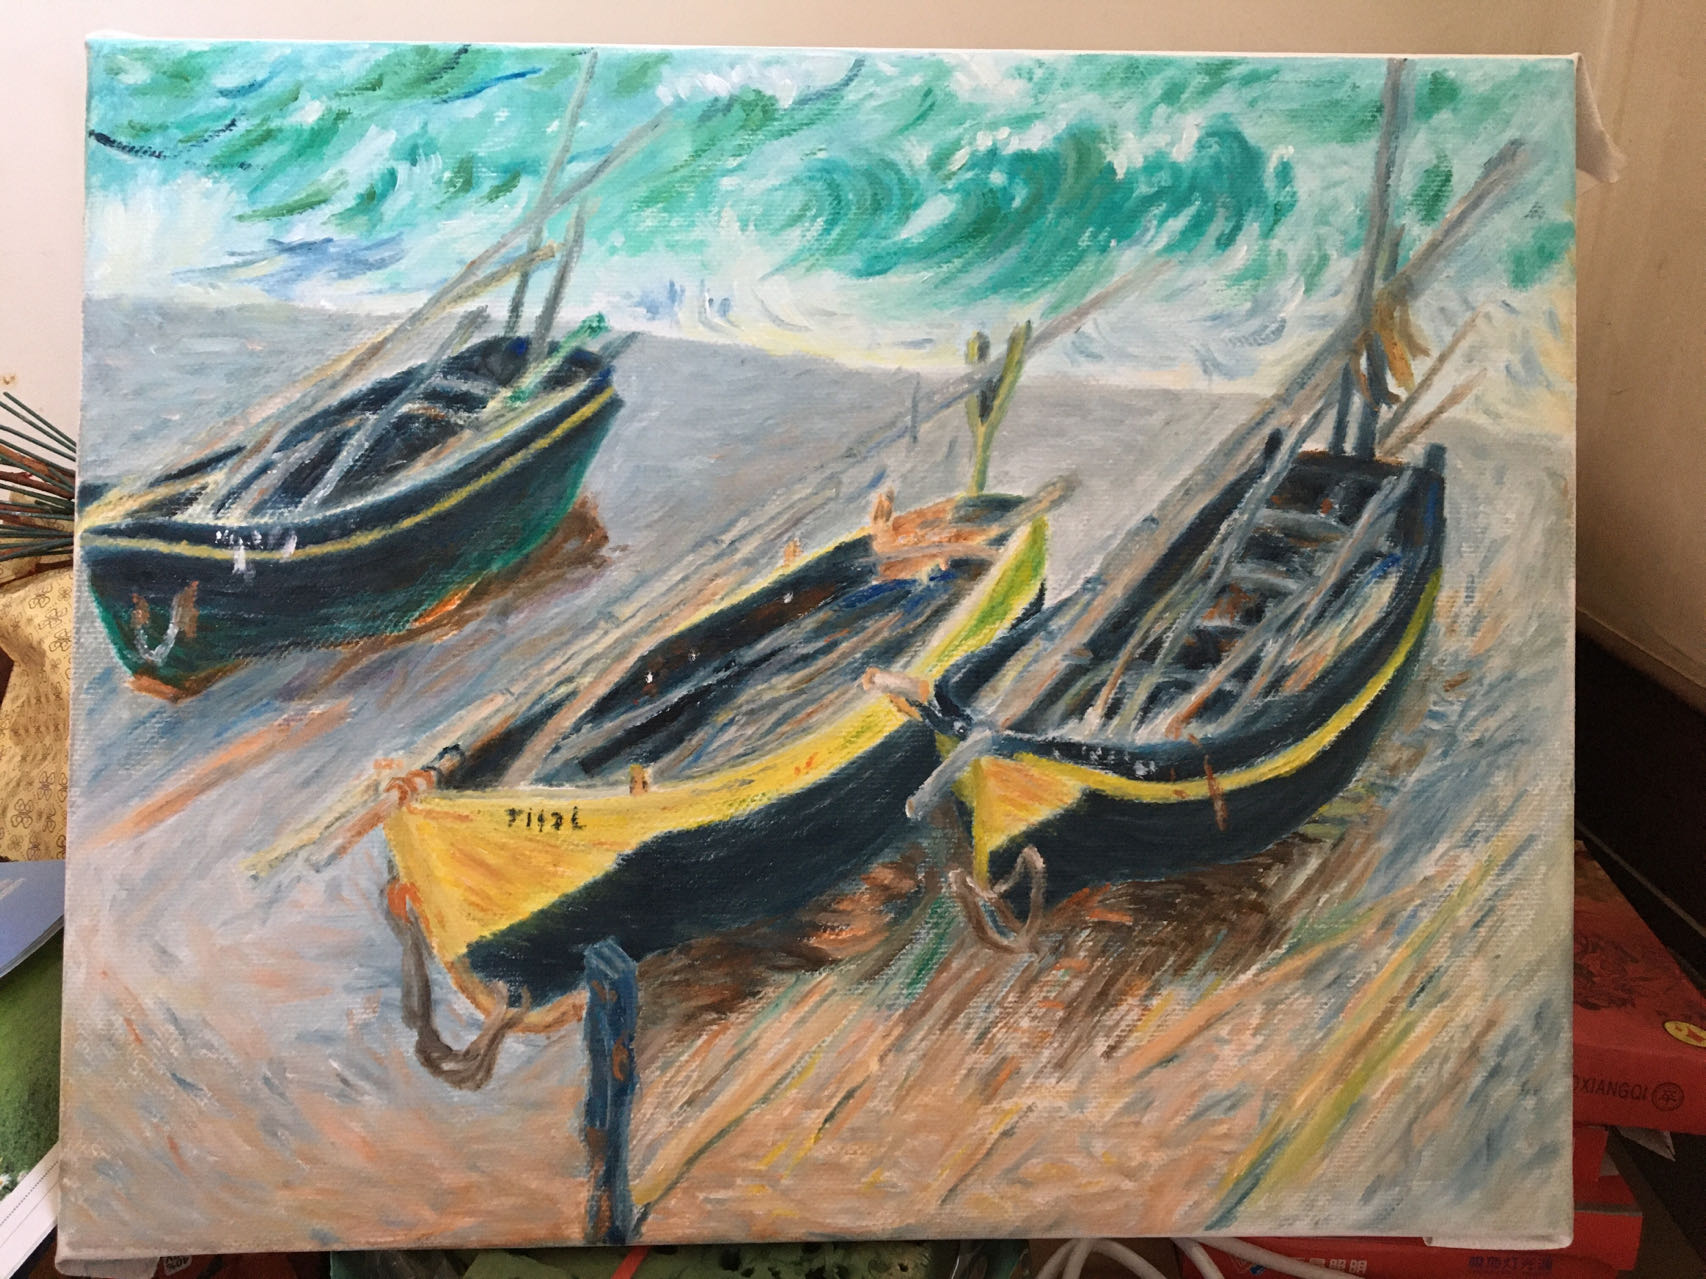 印象派大师莫奈“三艘渔船”临摹，手绘油画，大师临摹，装饰画